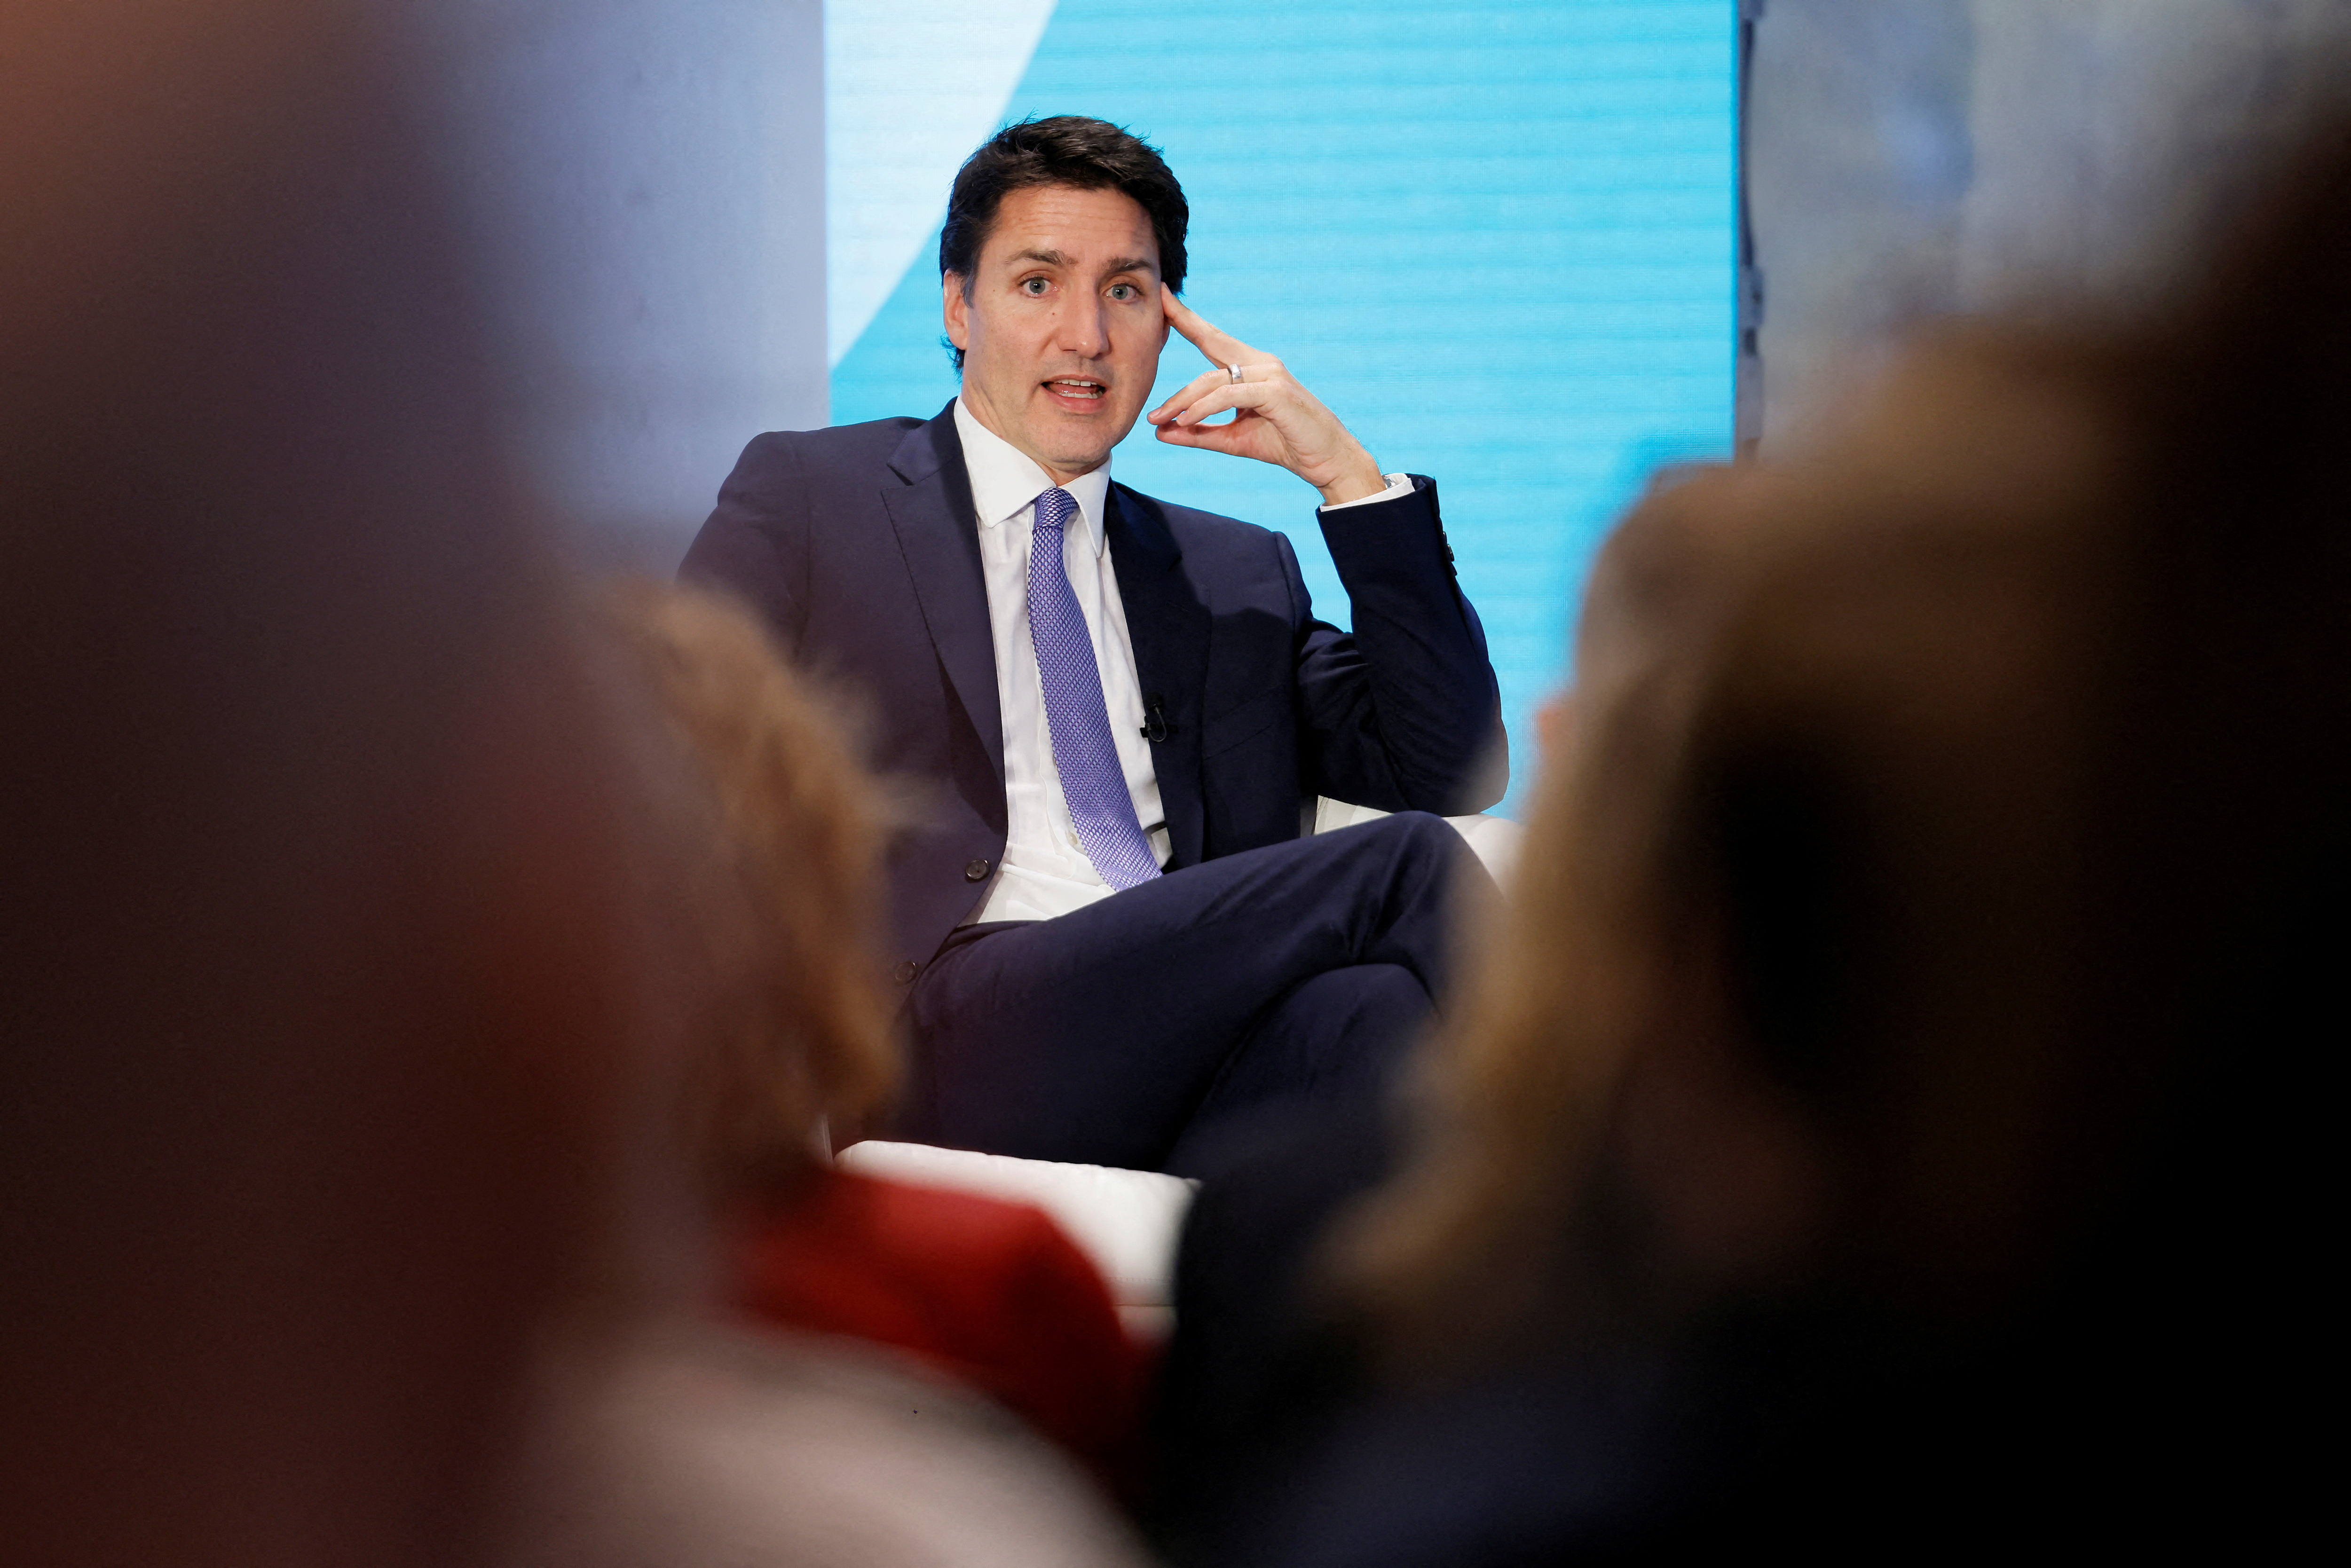 El primer ministro canadiense Justin Trudeau participa en la conferencia sobre cambio climático en Ottawa